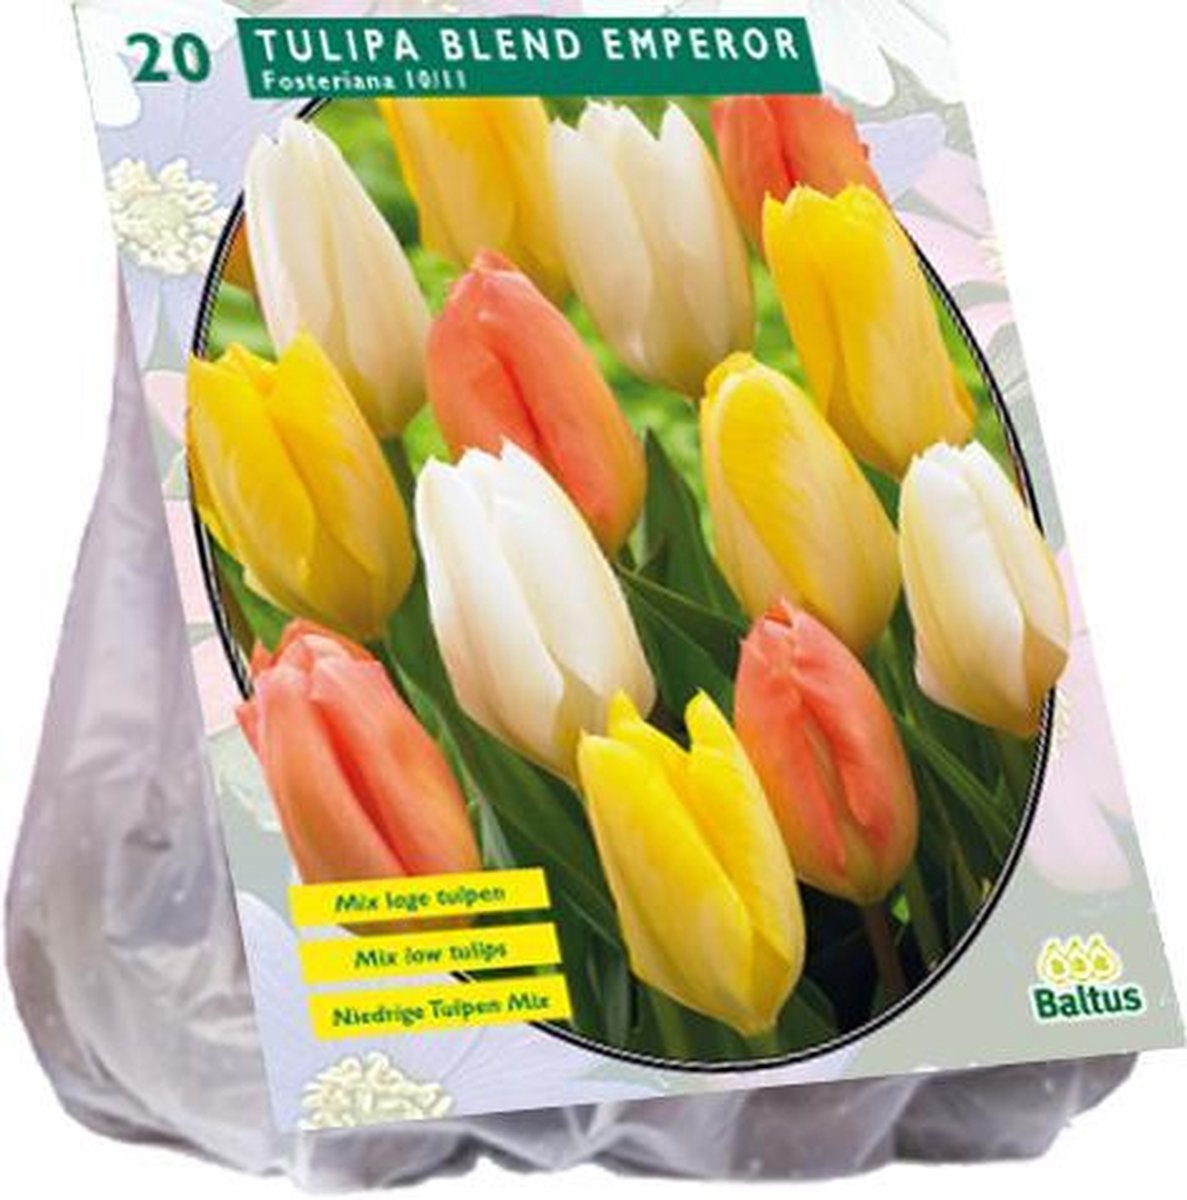 Tulipa (Tulpen) bloembollen - Blend Emperor 40 stuks